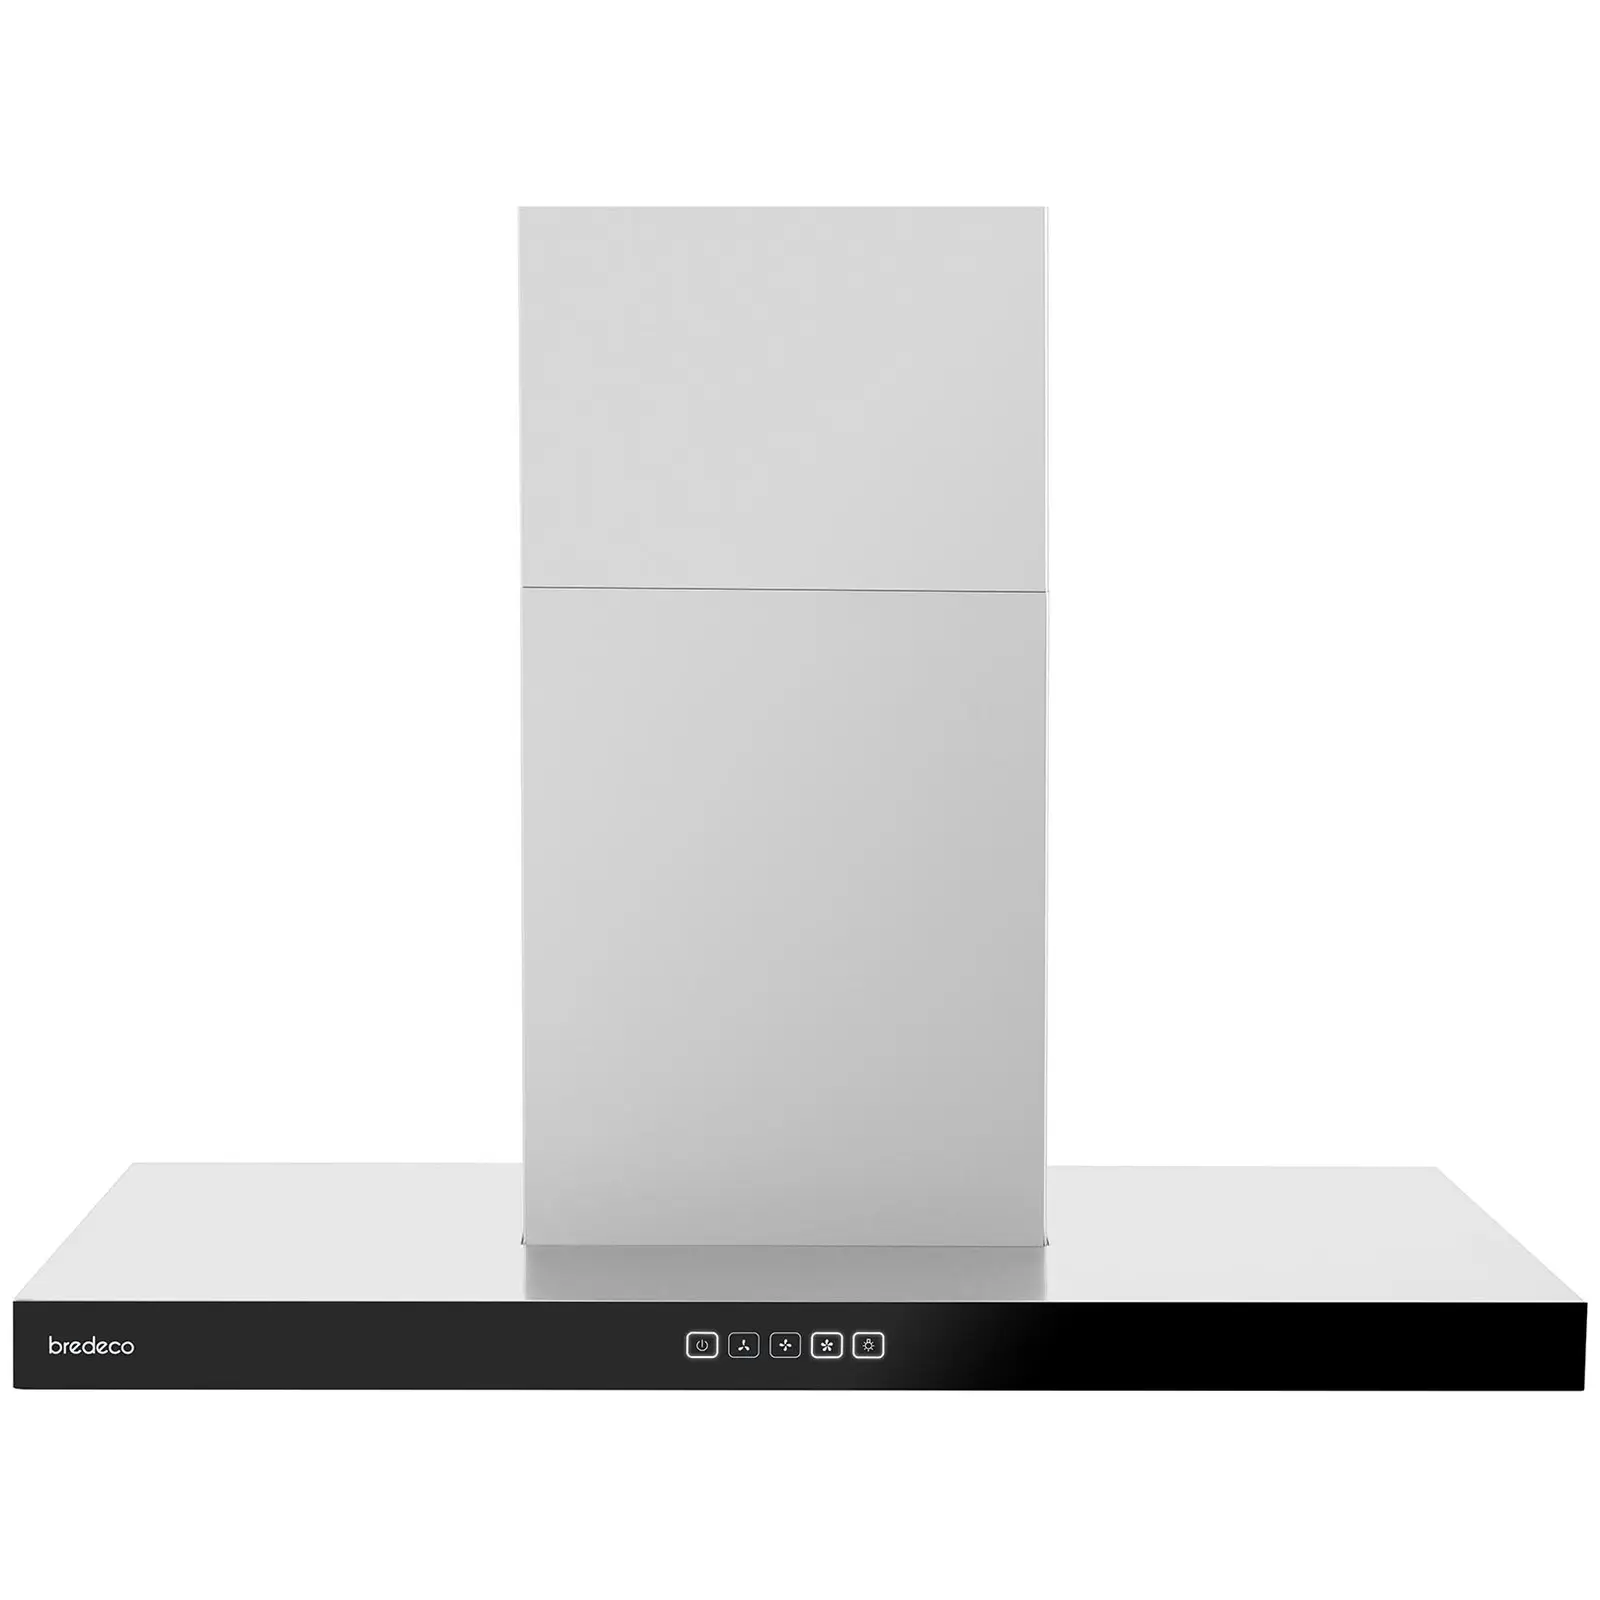 Kjøkkenvifte- 90 cm - 636,5 m³/t - touch display